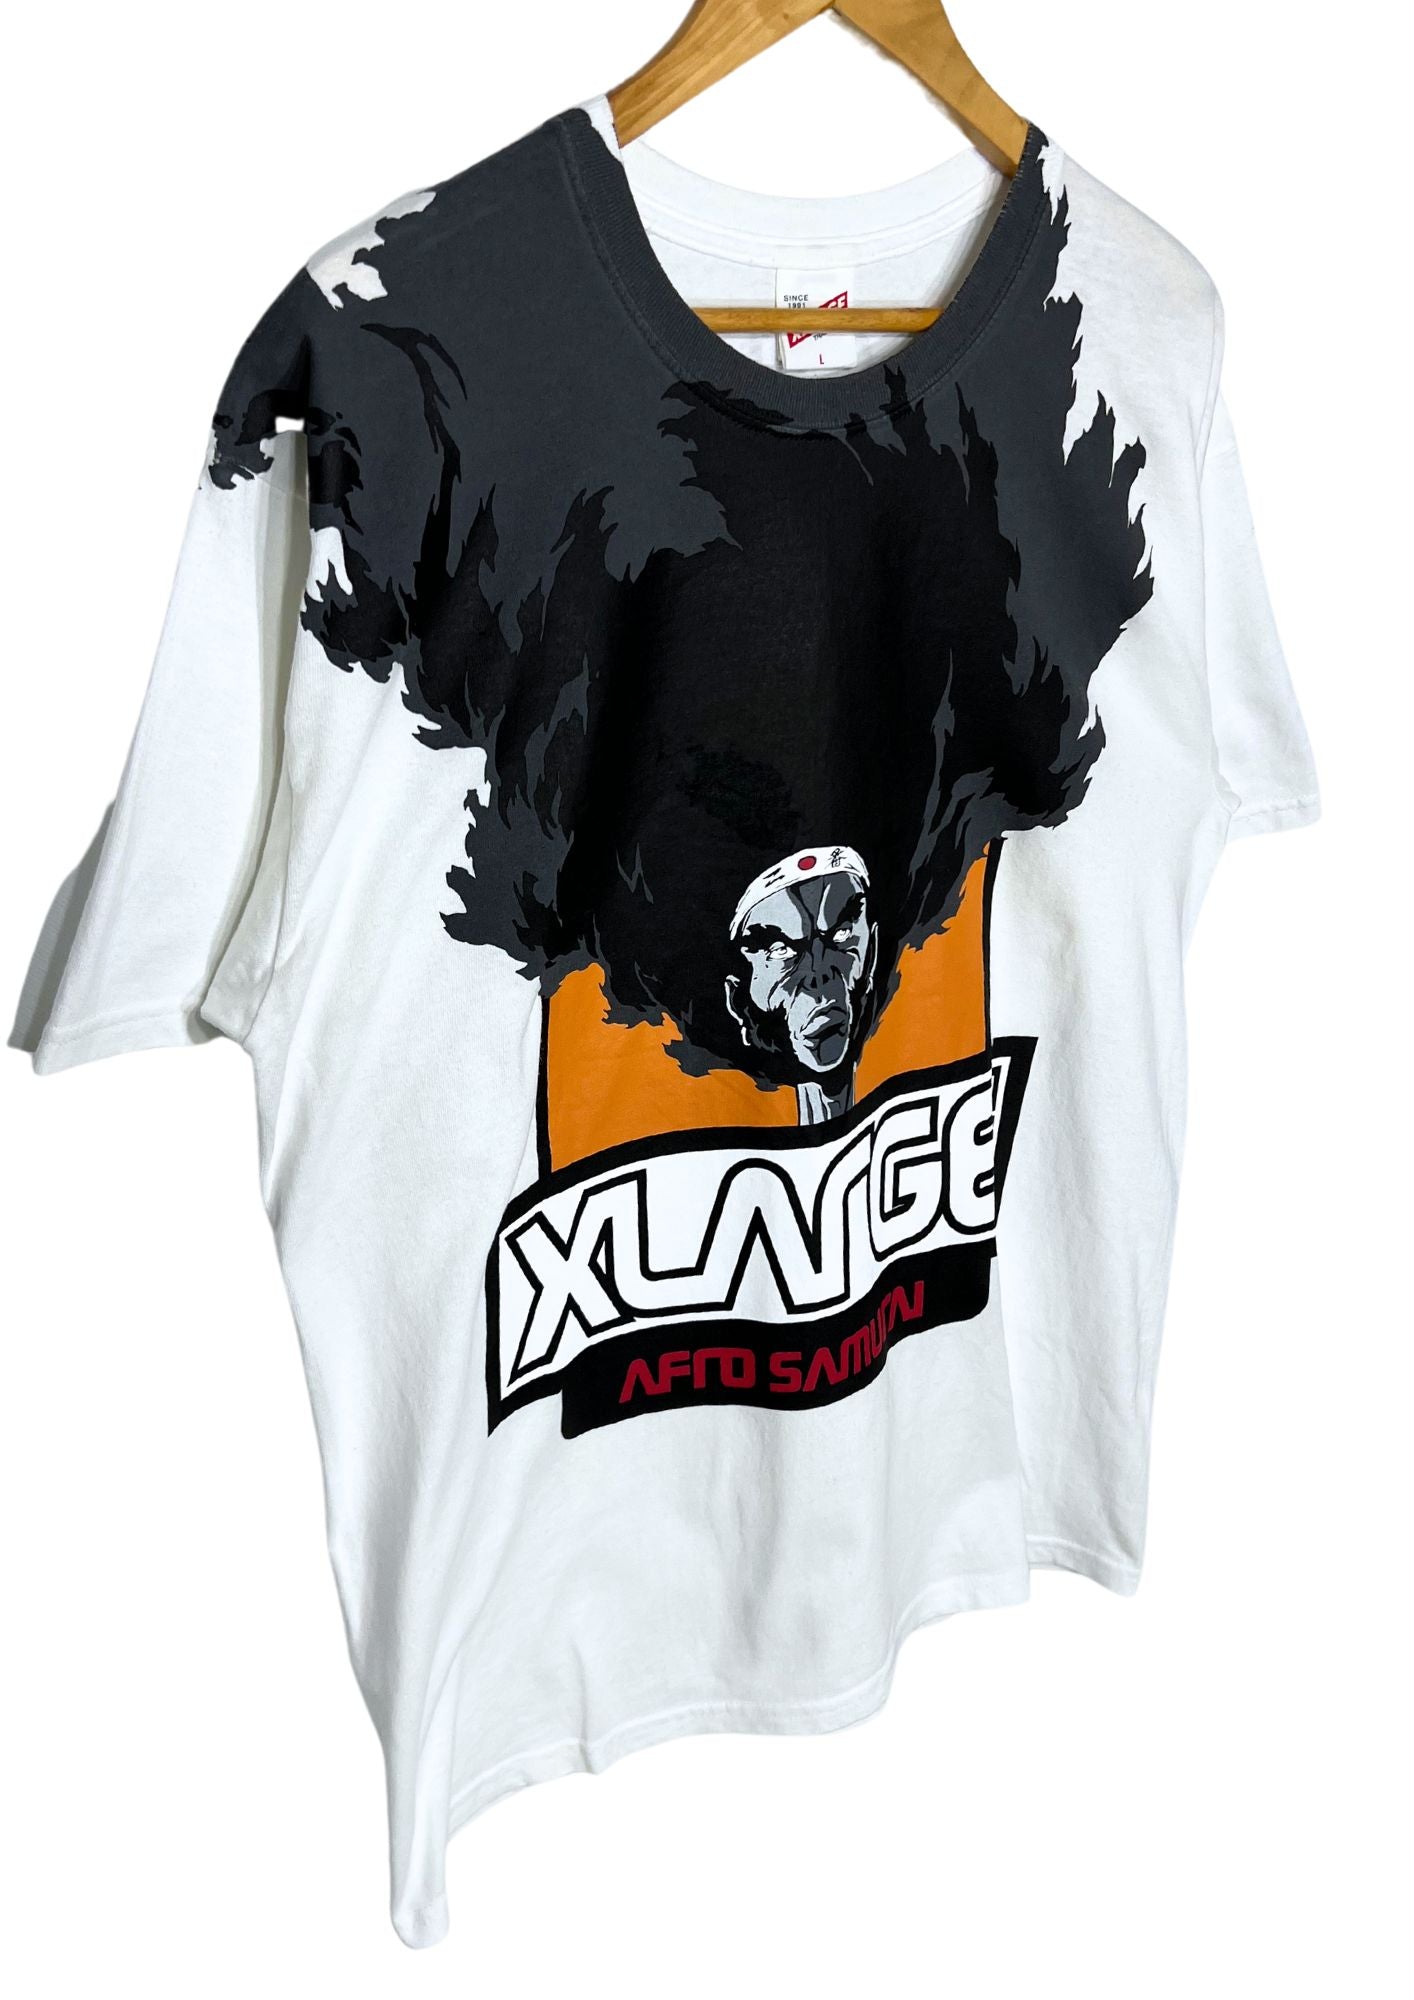 2009 Afro Samurai x X-Large Afro T-shirt